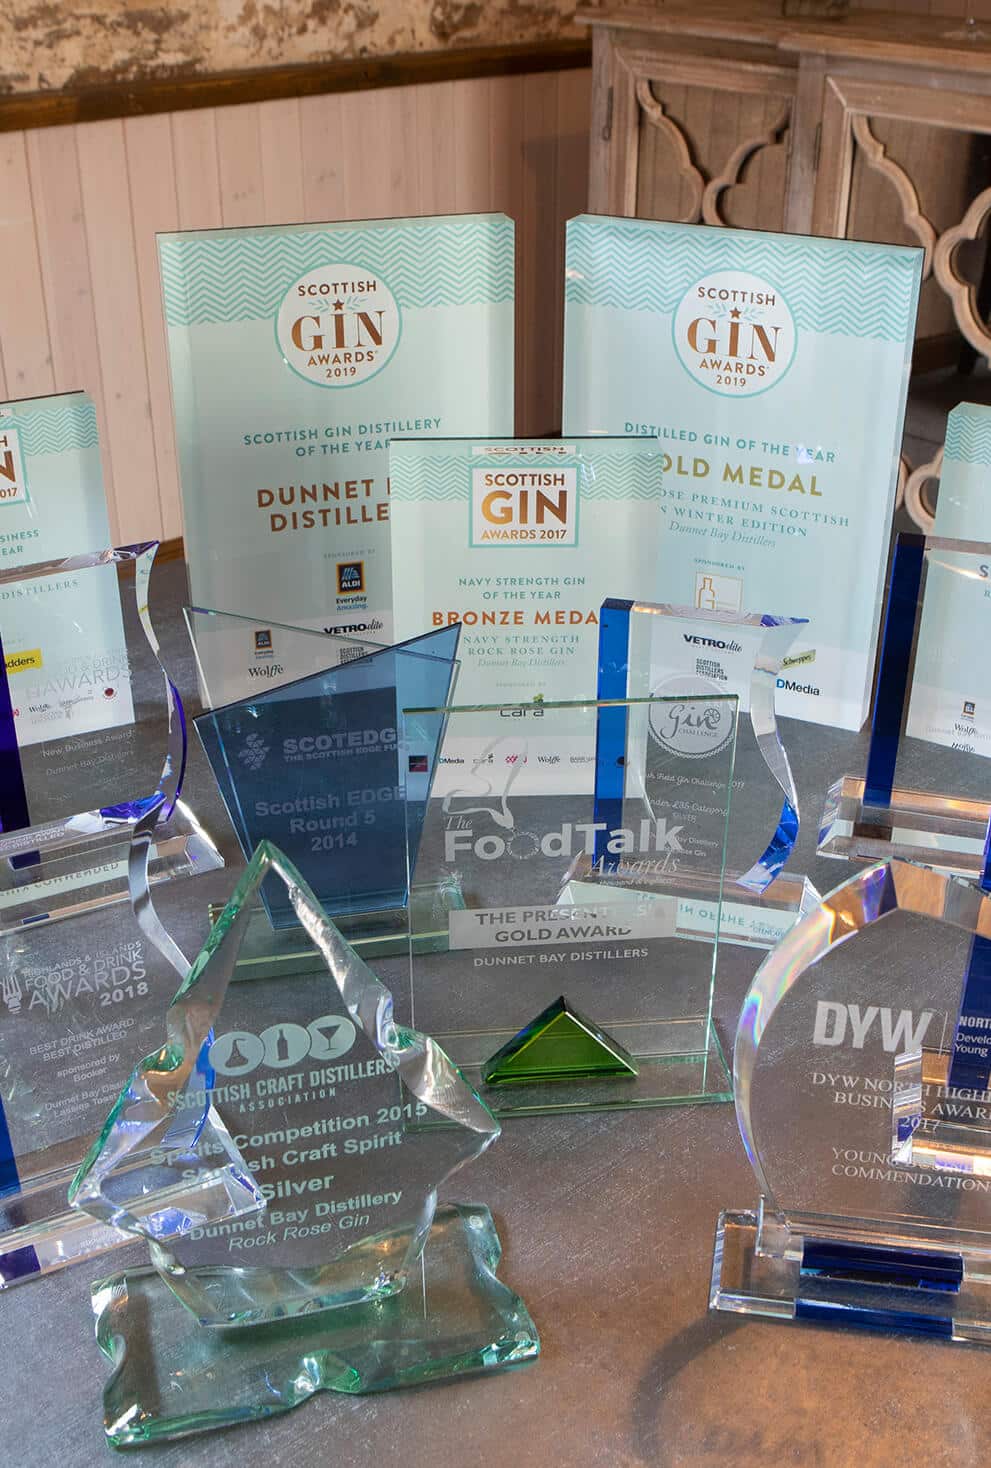 Dunnet Bay Distillers Awards – Tasting Room copy